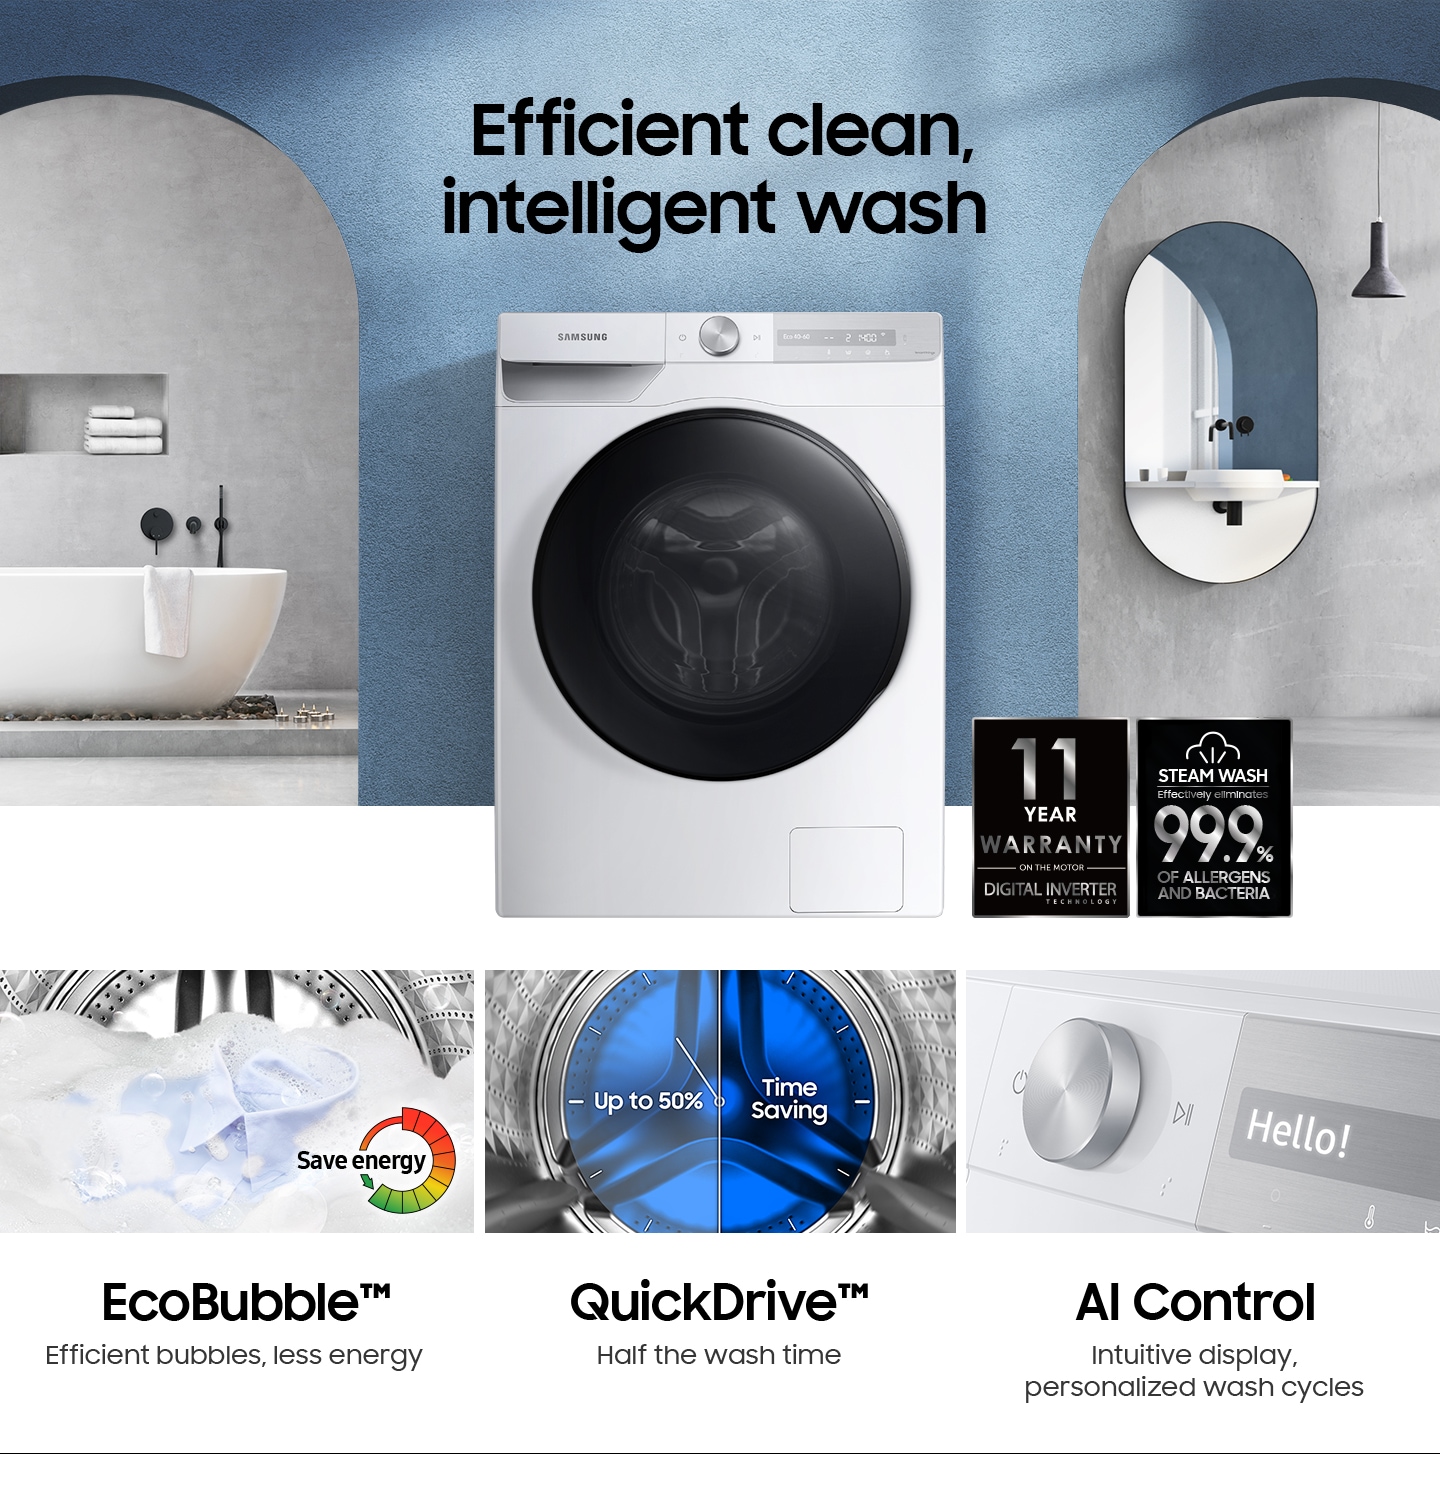 Efficient clean, intelligent wash.